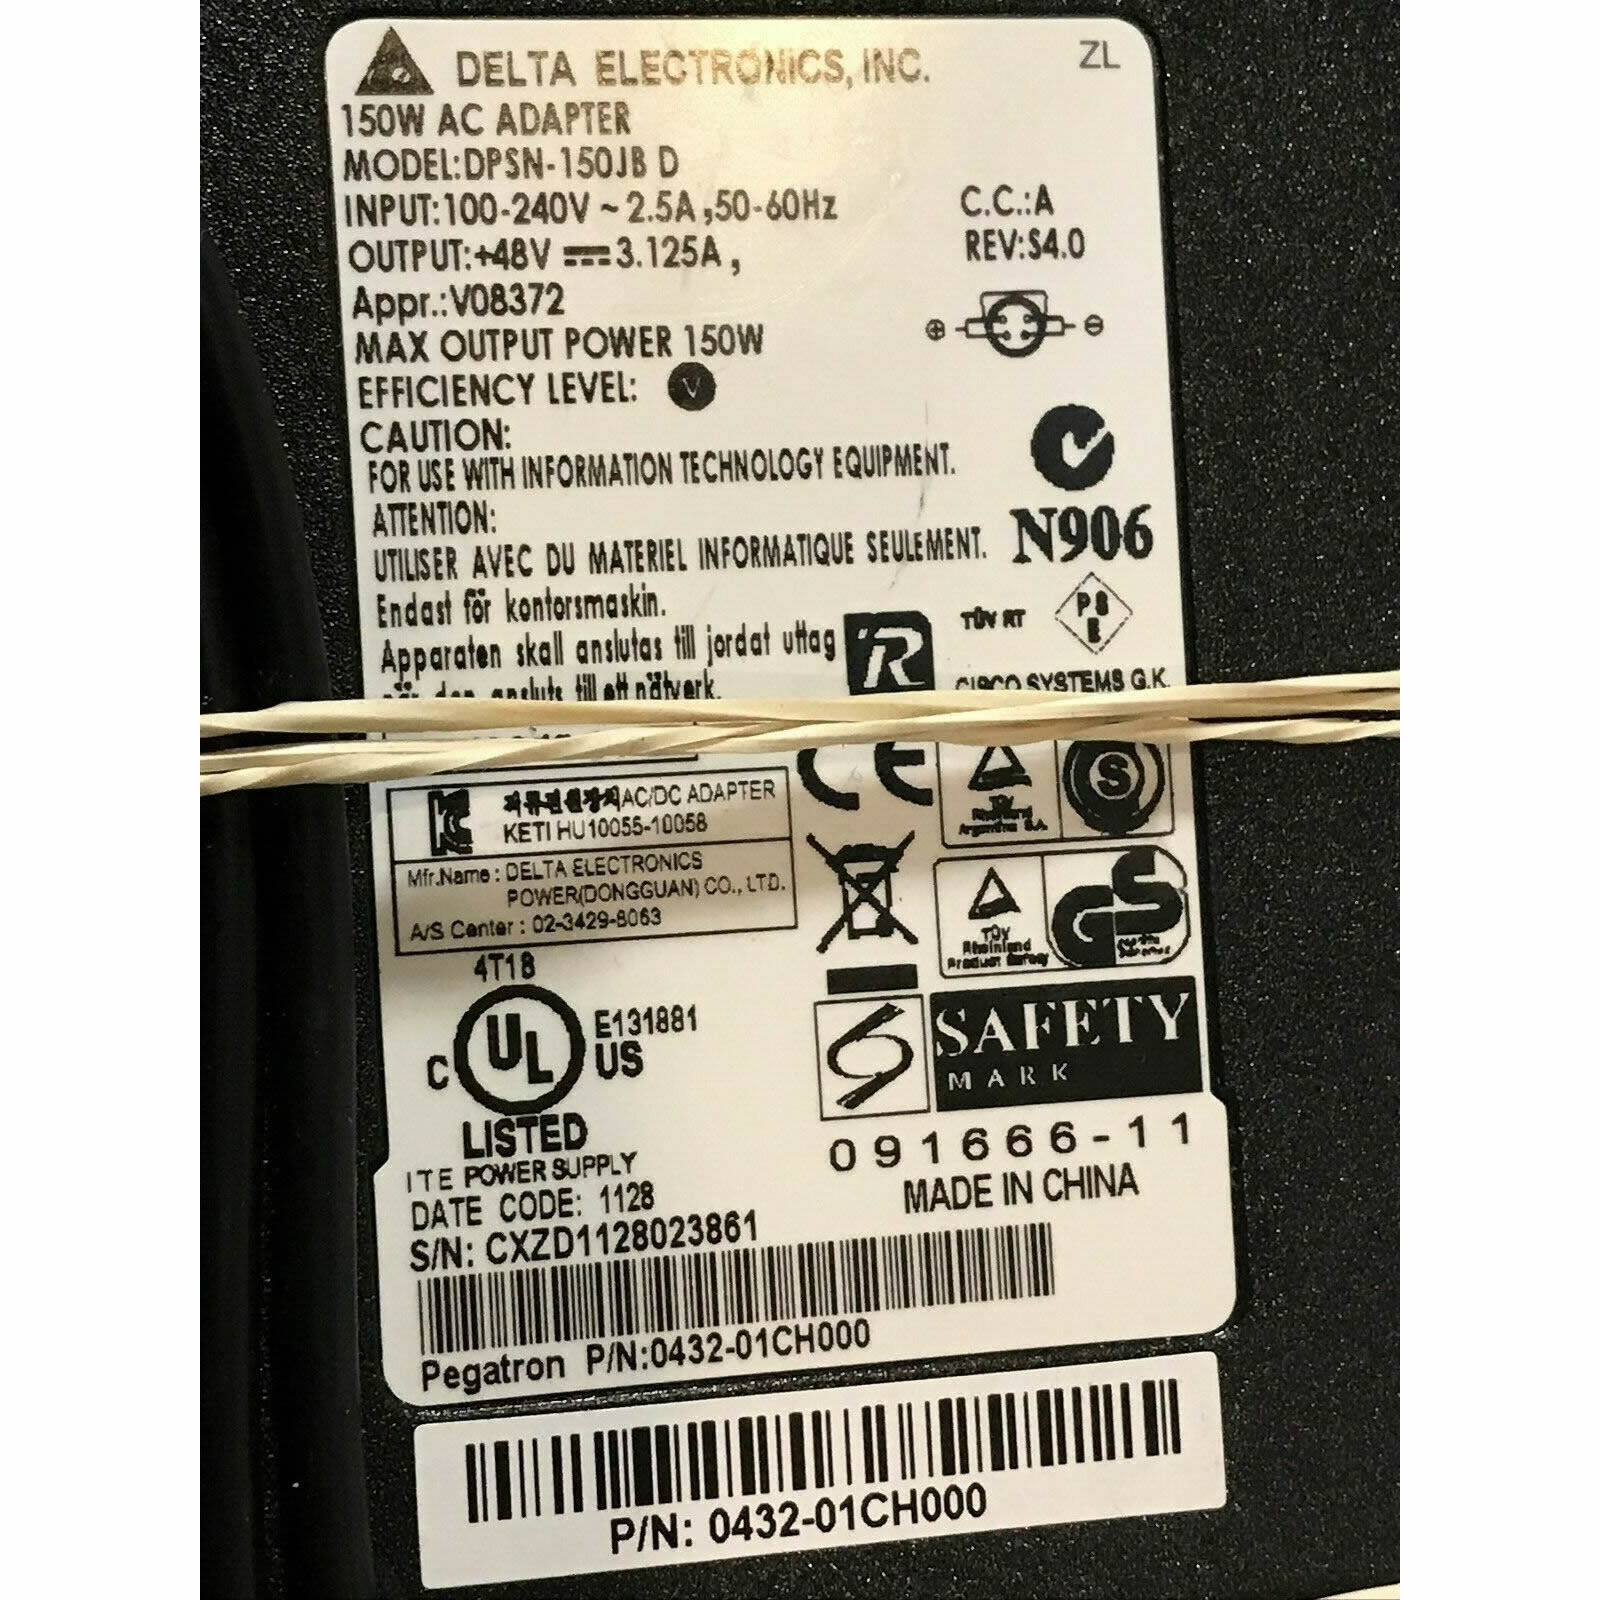 0432-01nq000 laptop ac adapter